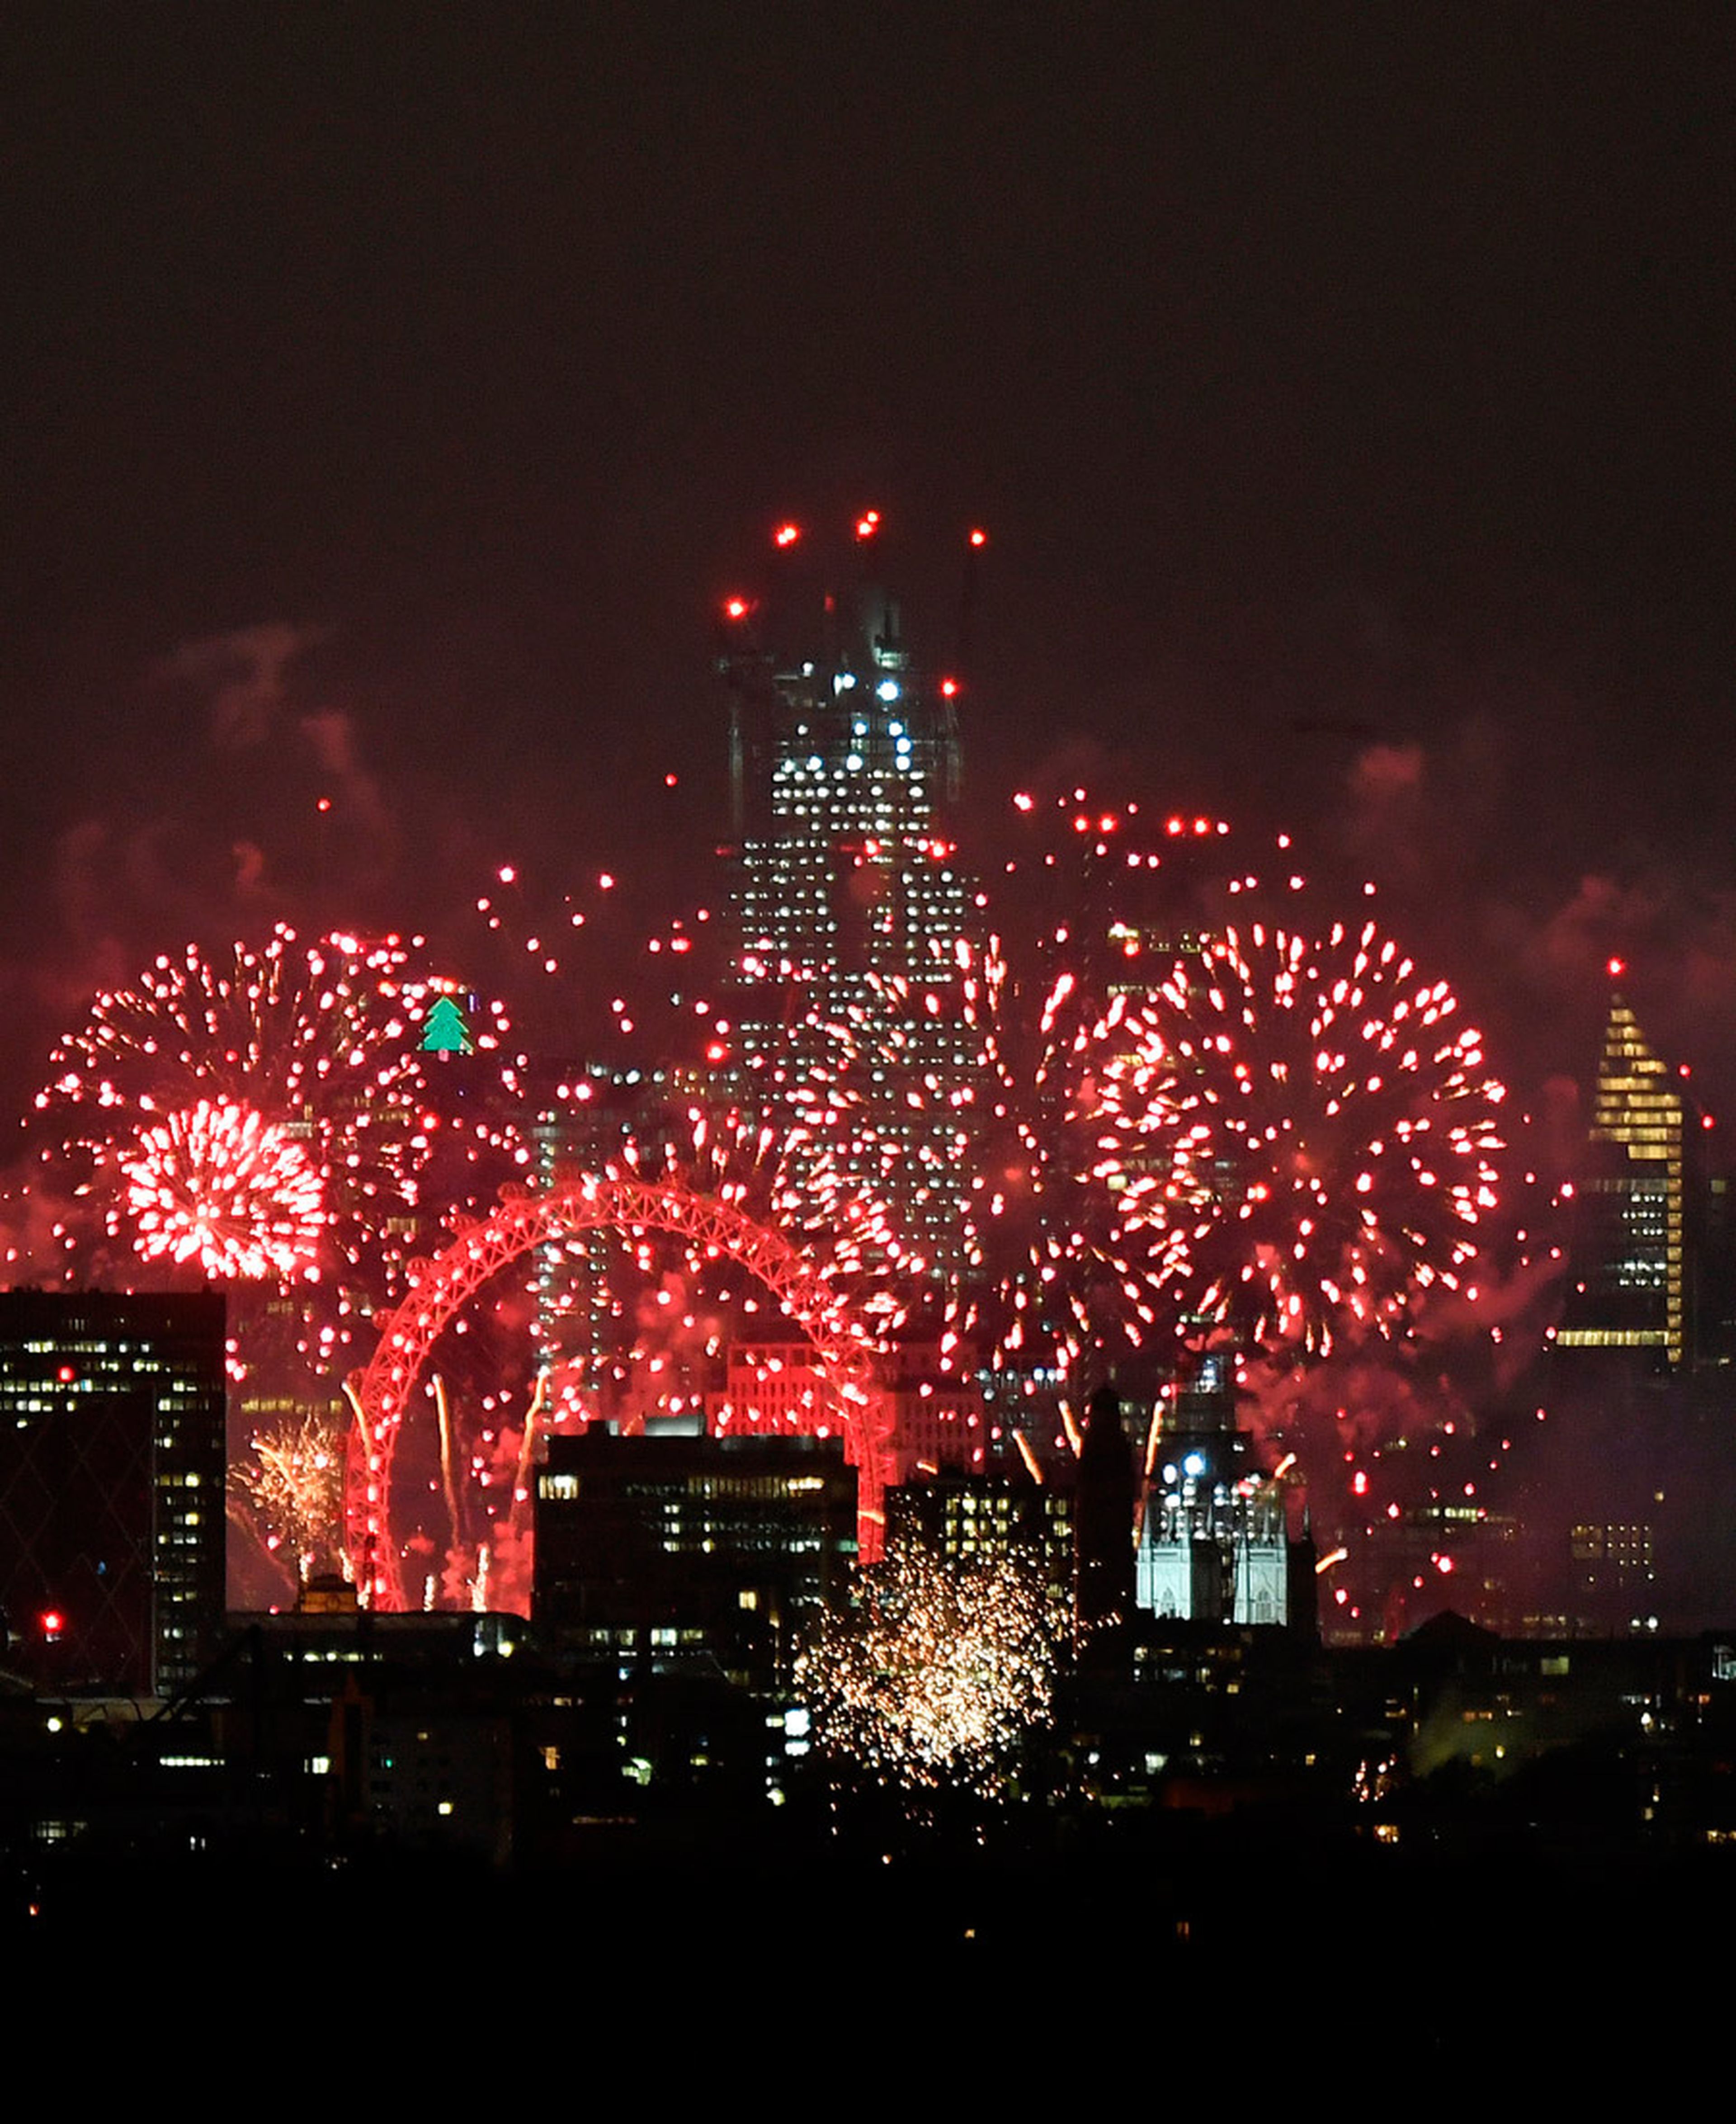 Los fuegos artificiales iluminan el cielo alrededor de la noria del London Eye para dar la bienvenida al Año Nuevo en Londres, Reino Unido, el 1 de enero de 2019.